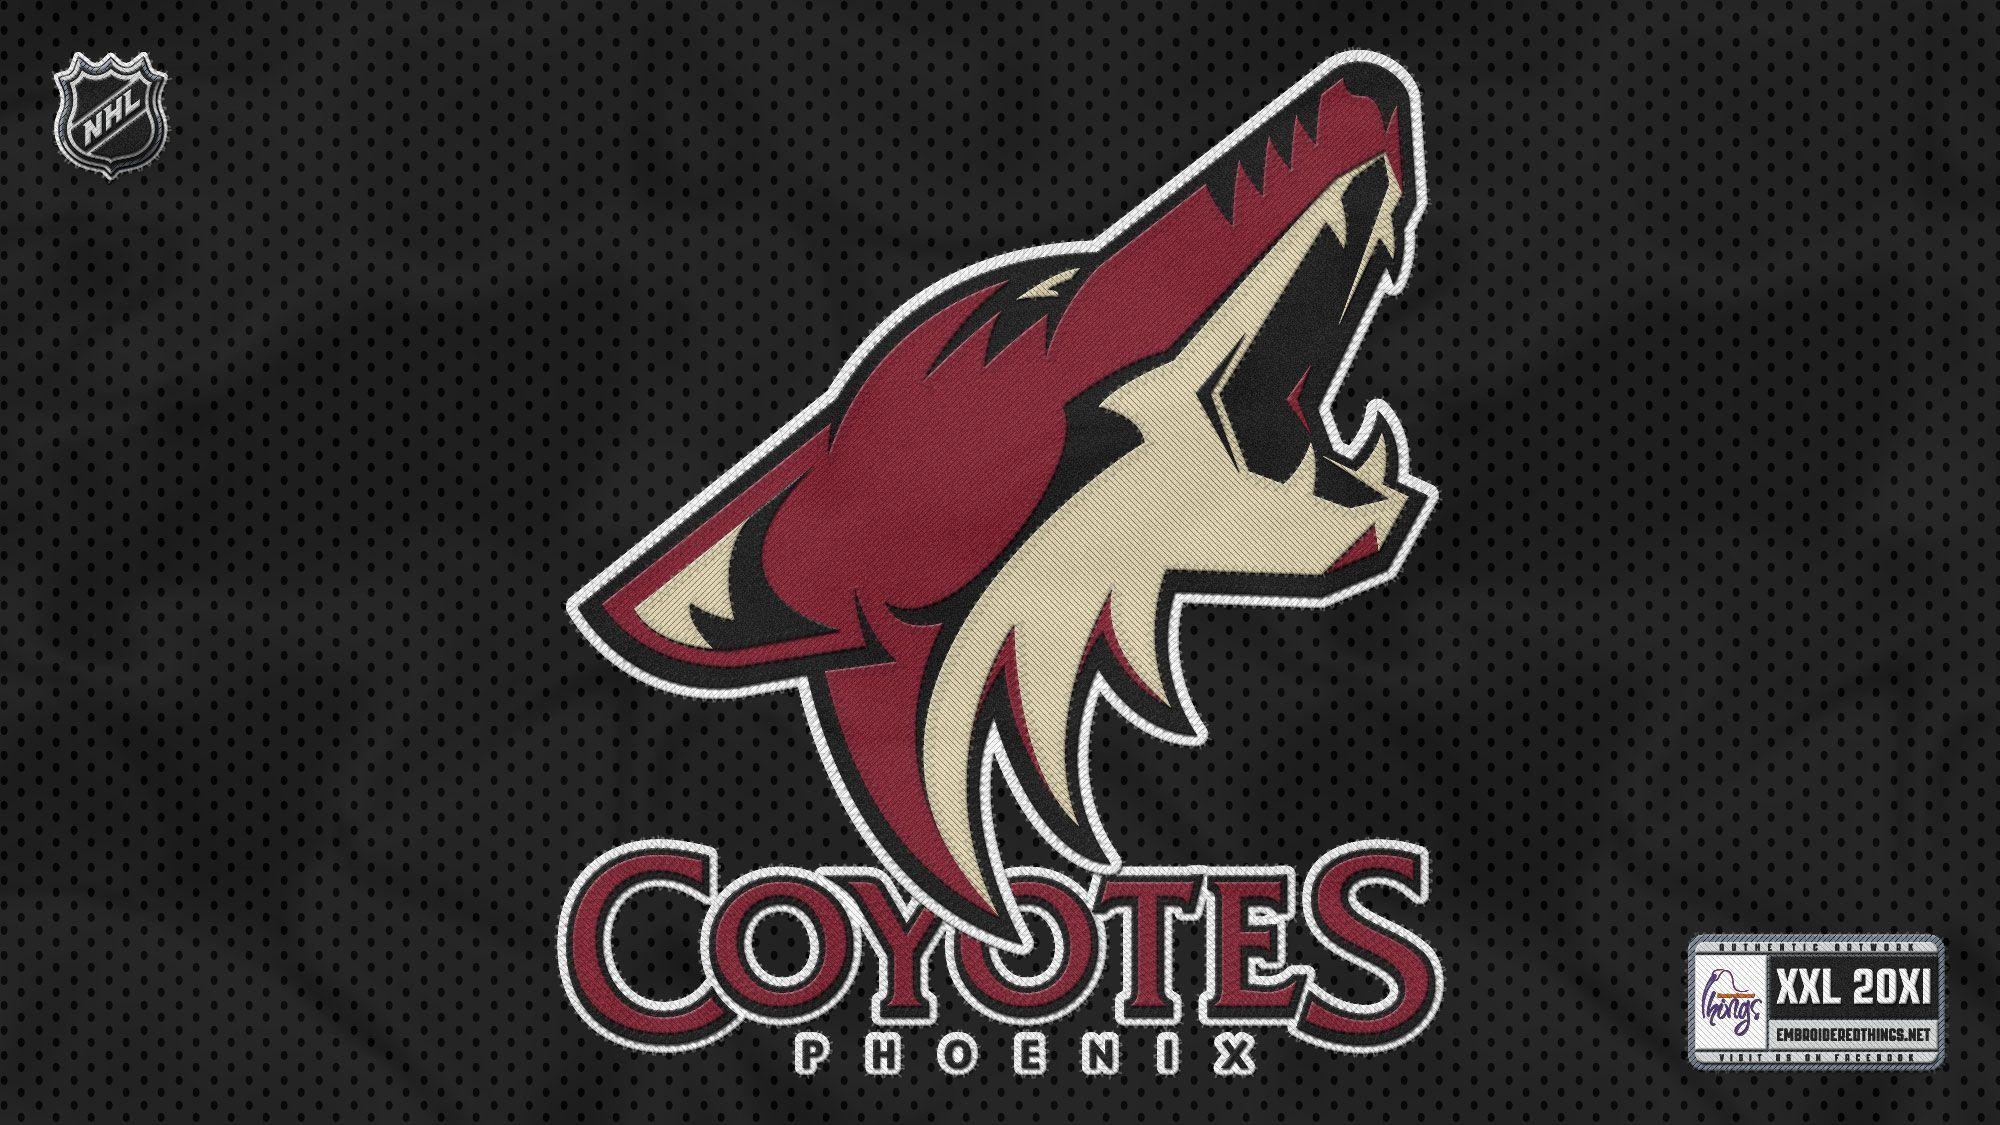 arizona coyotes jersey ebay